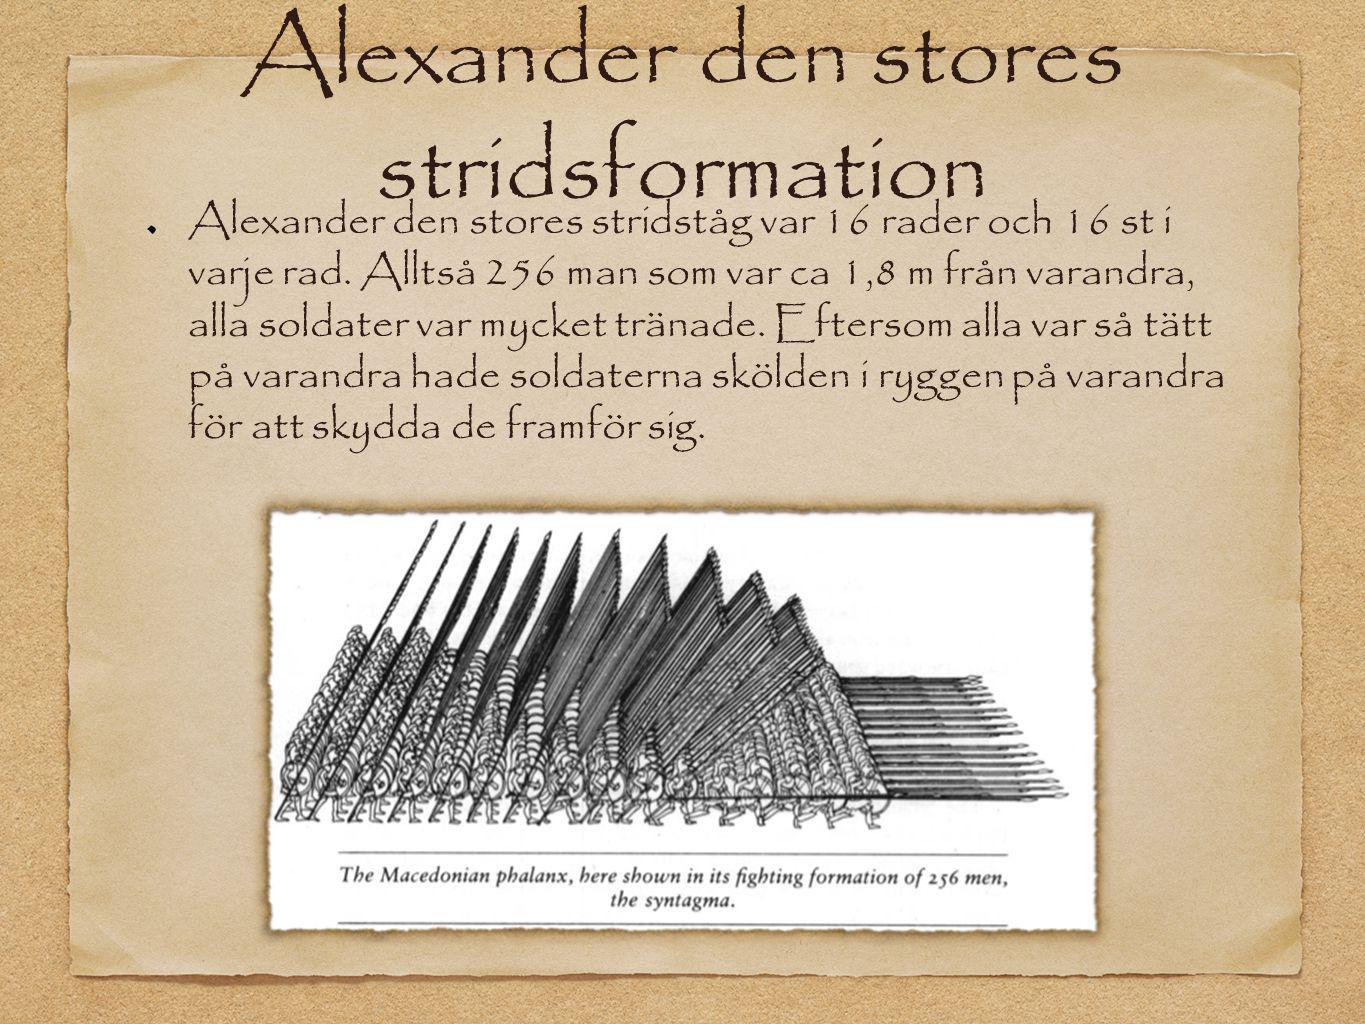 Alexander den stores stridsformation